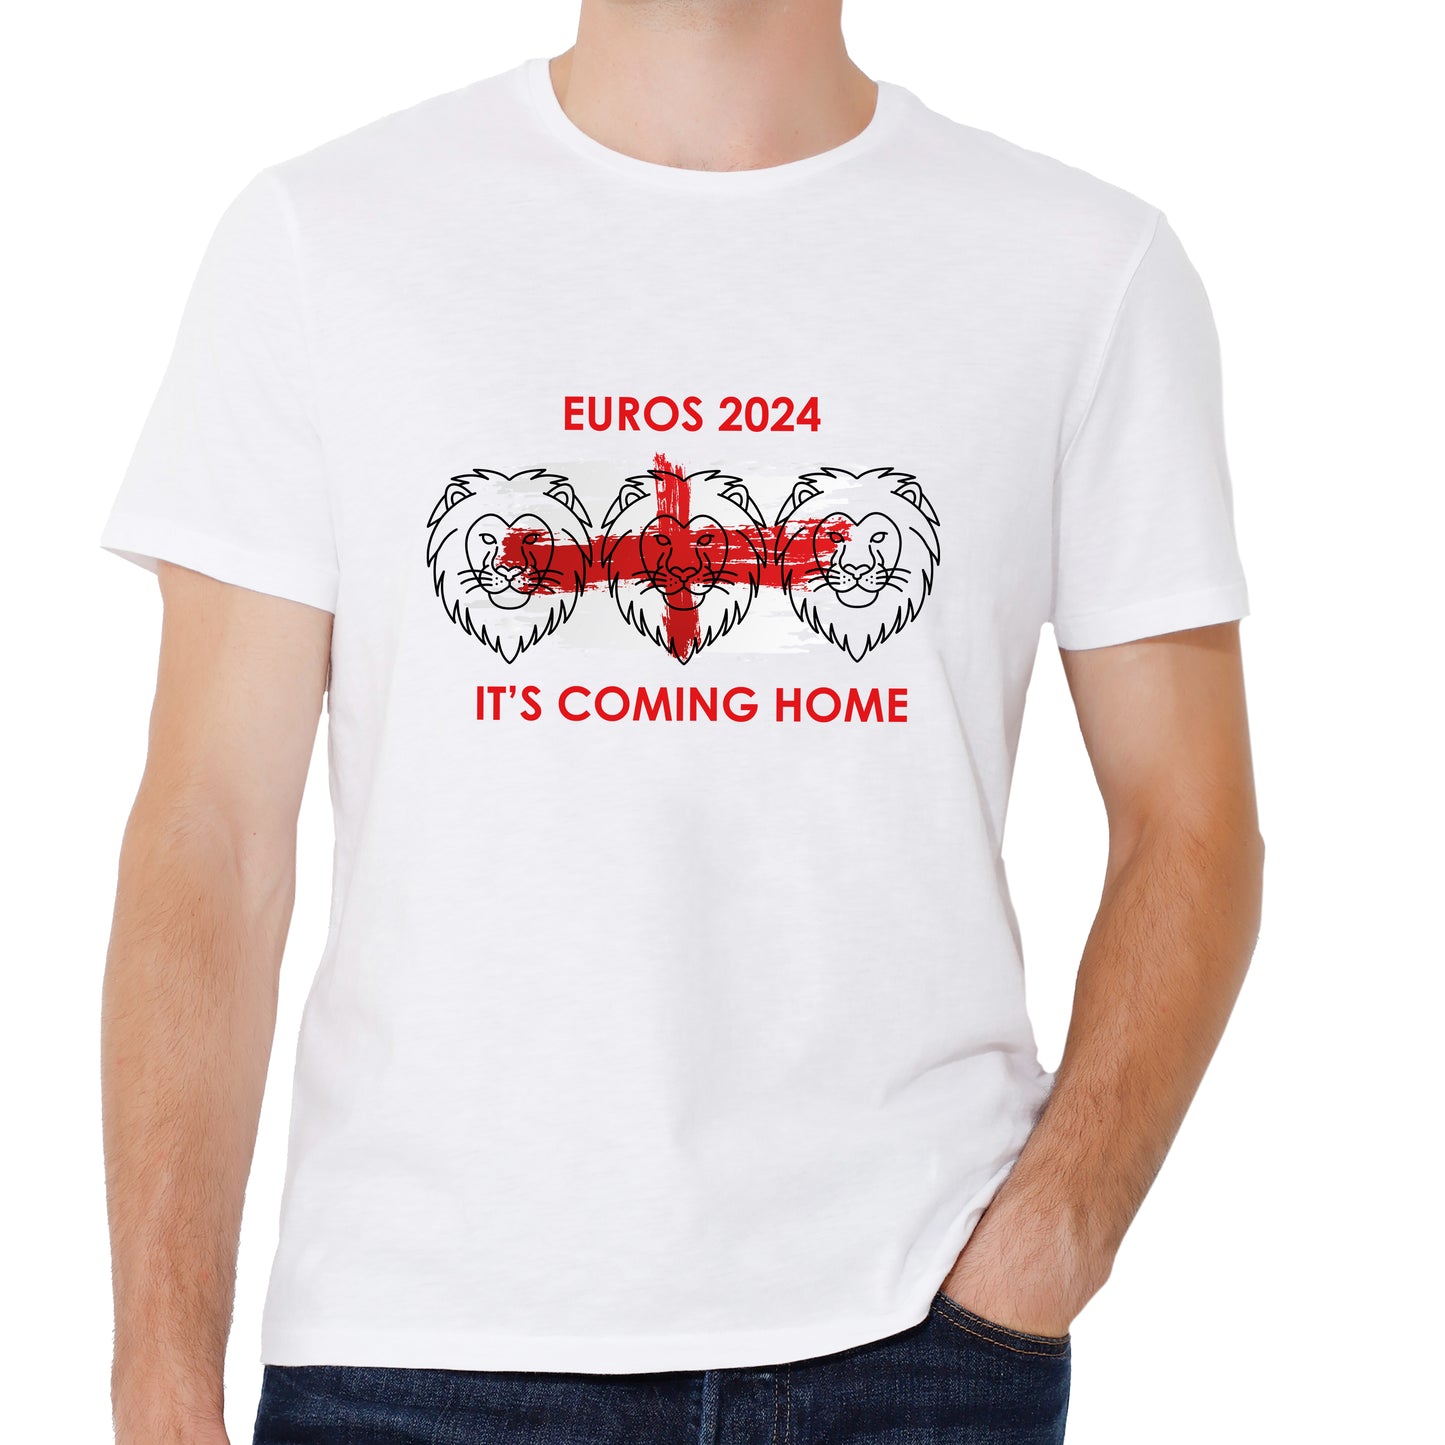 Euros 2024 Tshirt